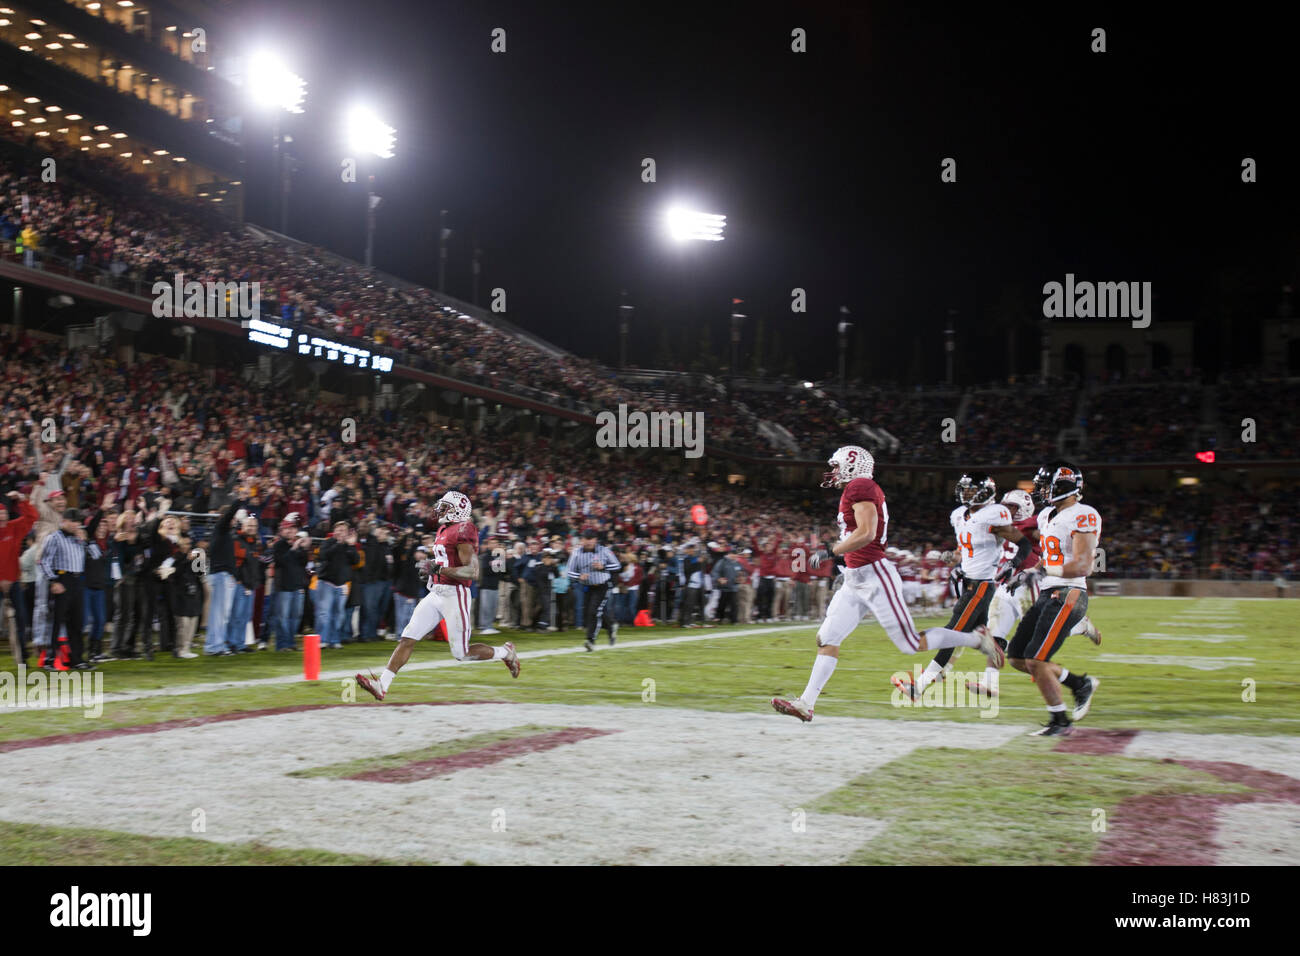 November 27, 2010, Stanford, CA, USA; Stanford Kardinal wide receiver Doug Baldwin (links) zählt einen Touchdown gegen die Oregon State beavers im zweiten Quartal an der Stanford Stadium. Stockfoto